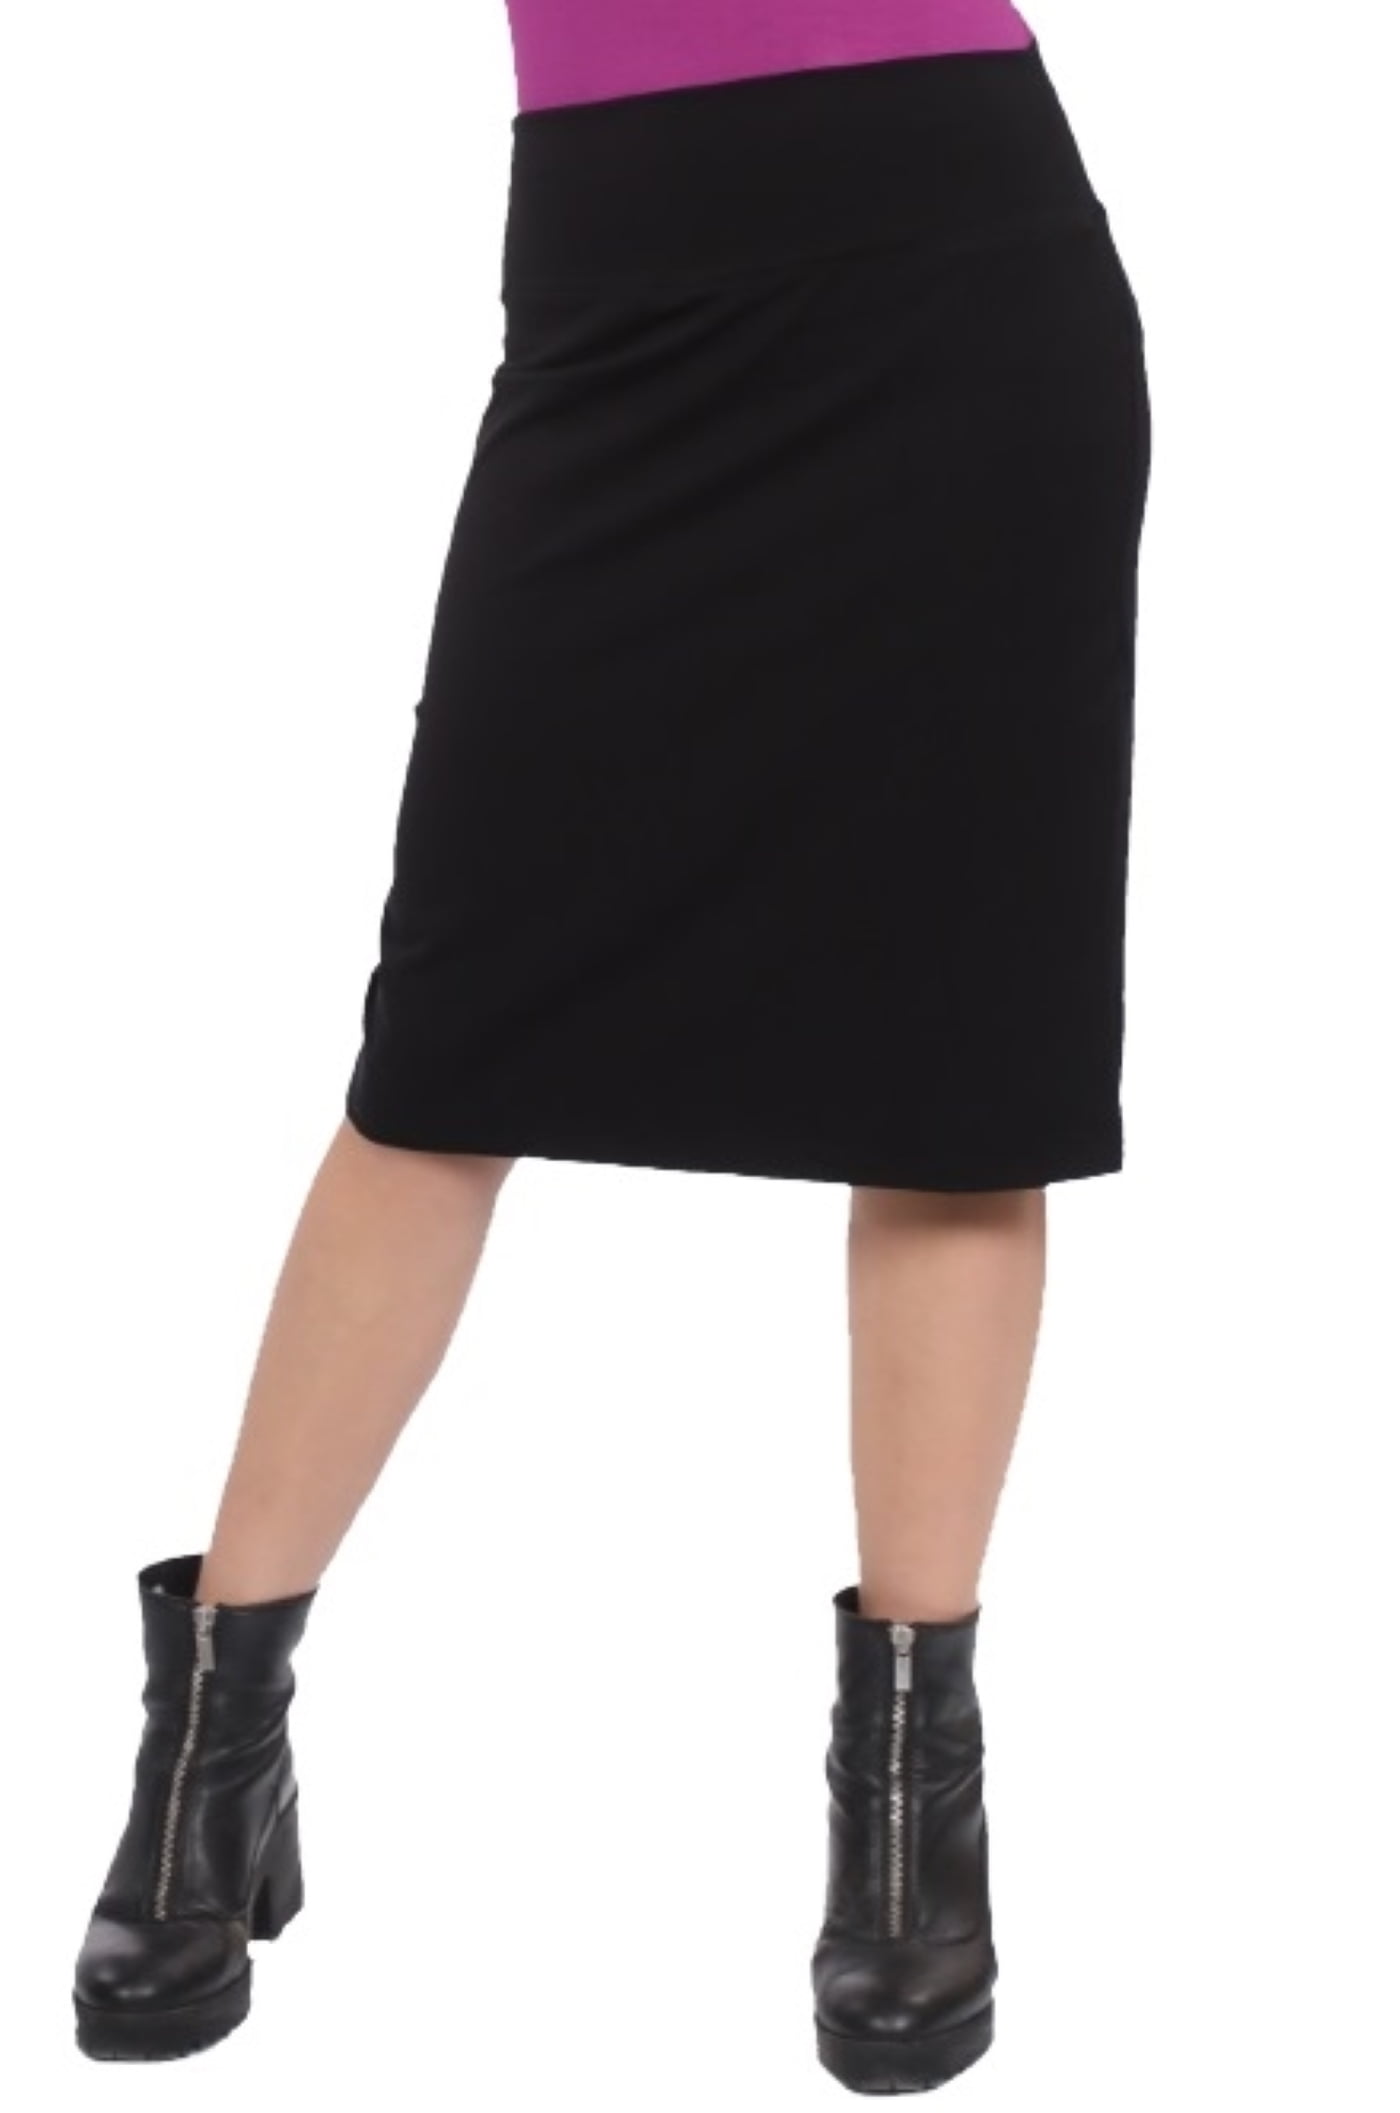 Kosher Casual Women's Modest Knee-Length A-Line Lightweight Cotton Spandex Skirt